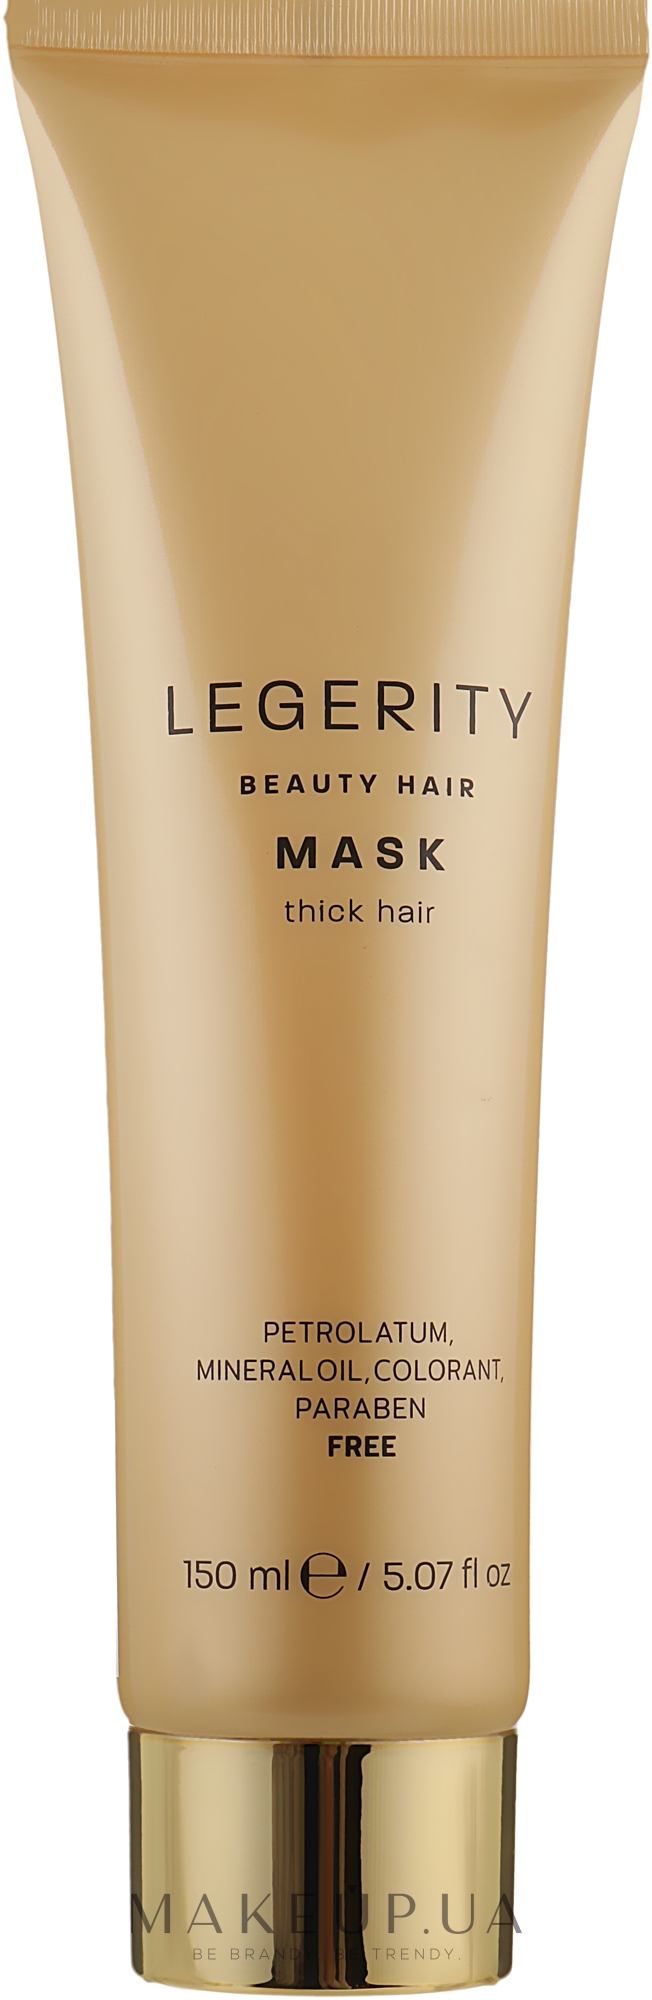 Маска для плотных волос - Screen Legerity Beauty Hair Mask Thick Hair  — фото 150ml